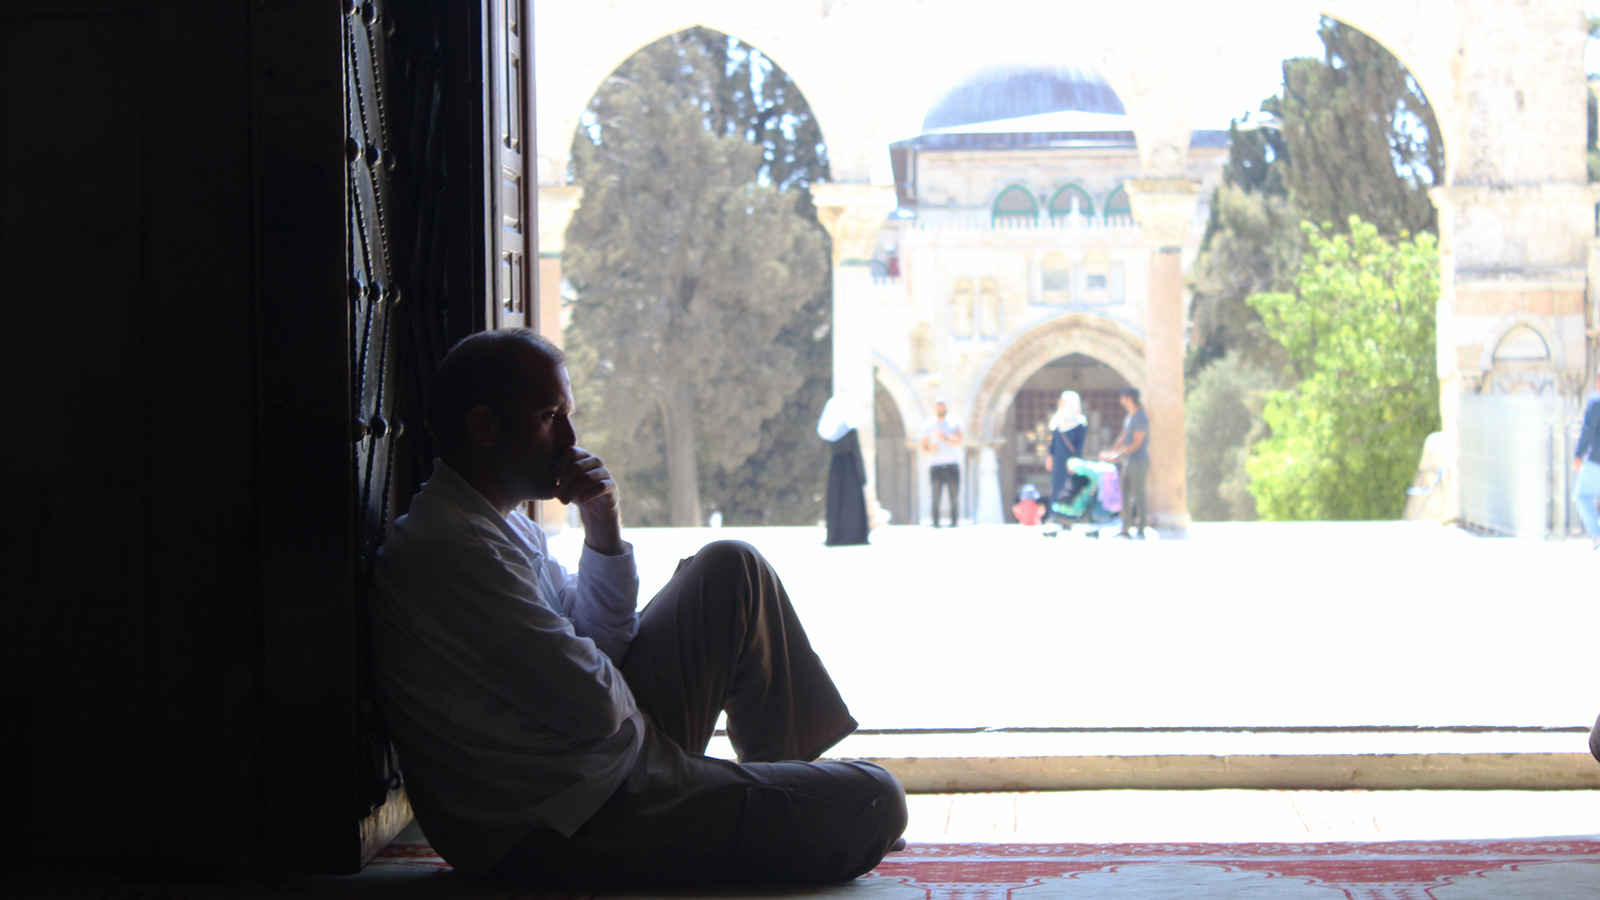 مجلس الأوقاف الإسلامية في القدس قرر تعليق فتح المسجد الأقصى بوجه المصلين طوال شهر رمضان بسبب تفشي كورونا (الجزيرة نت-أرشيفية)